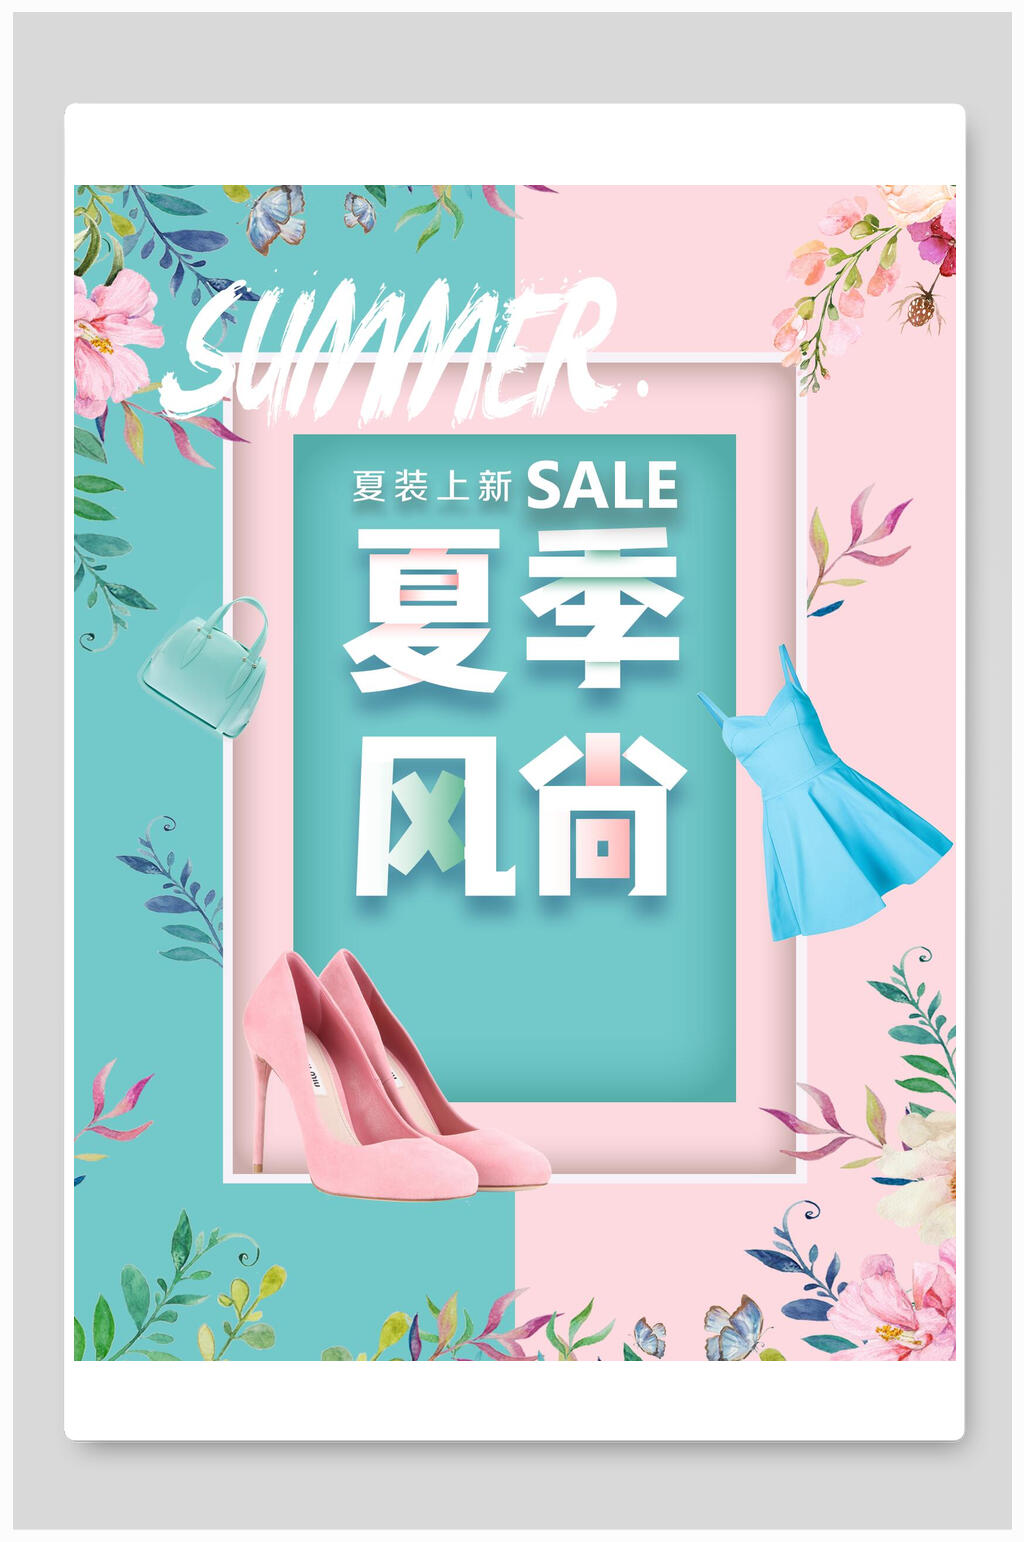 众图网独家提供清新粉蓝色夏季夏日风尚服饰海报素材免费下载,本作品